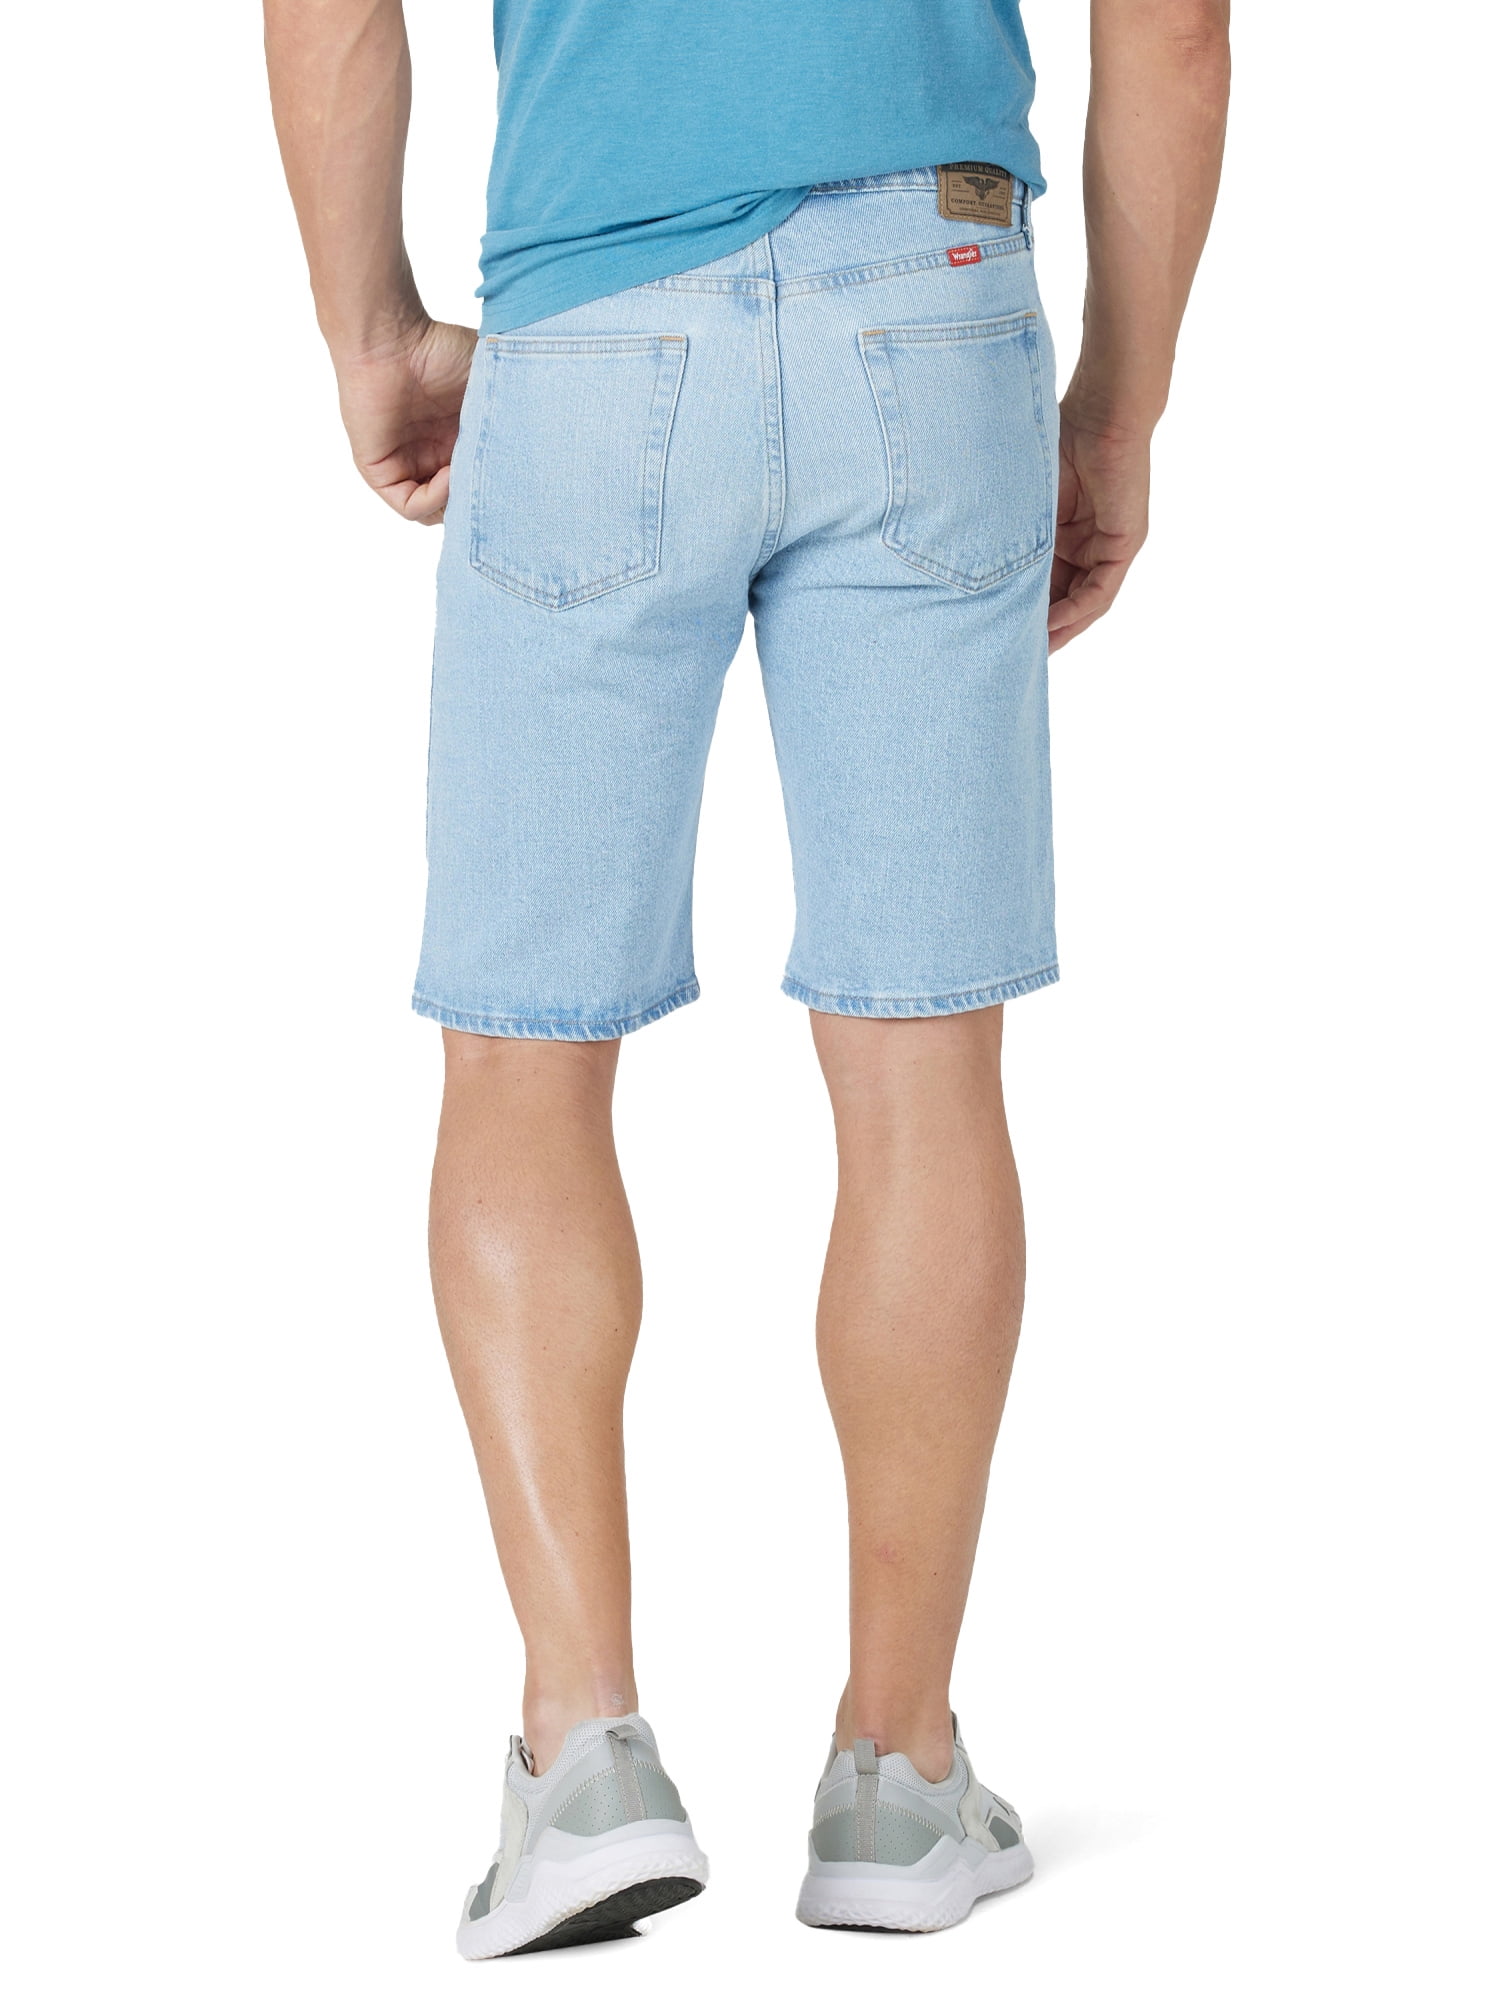 Wrangler Men's 5 Pocket Denim Shorts 